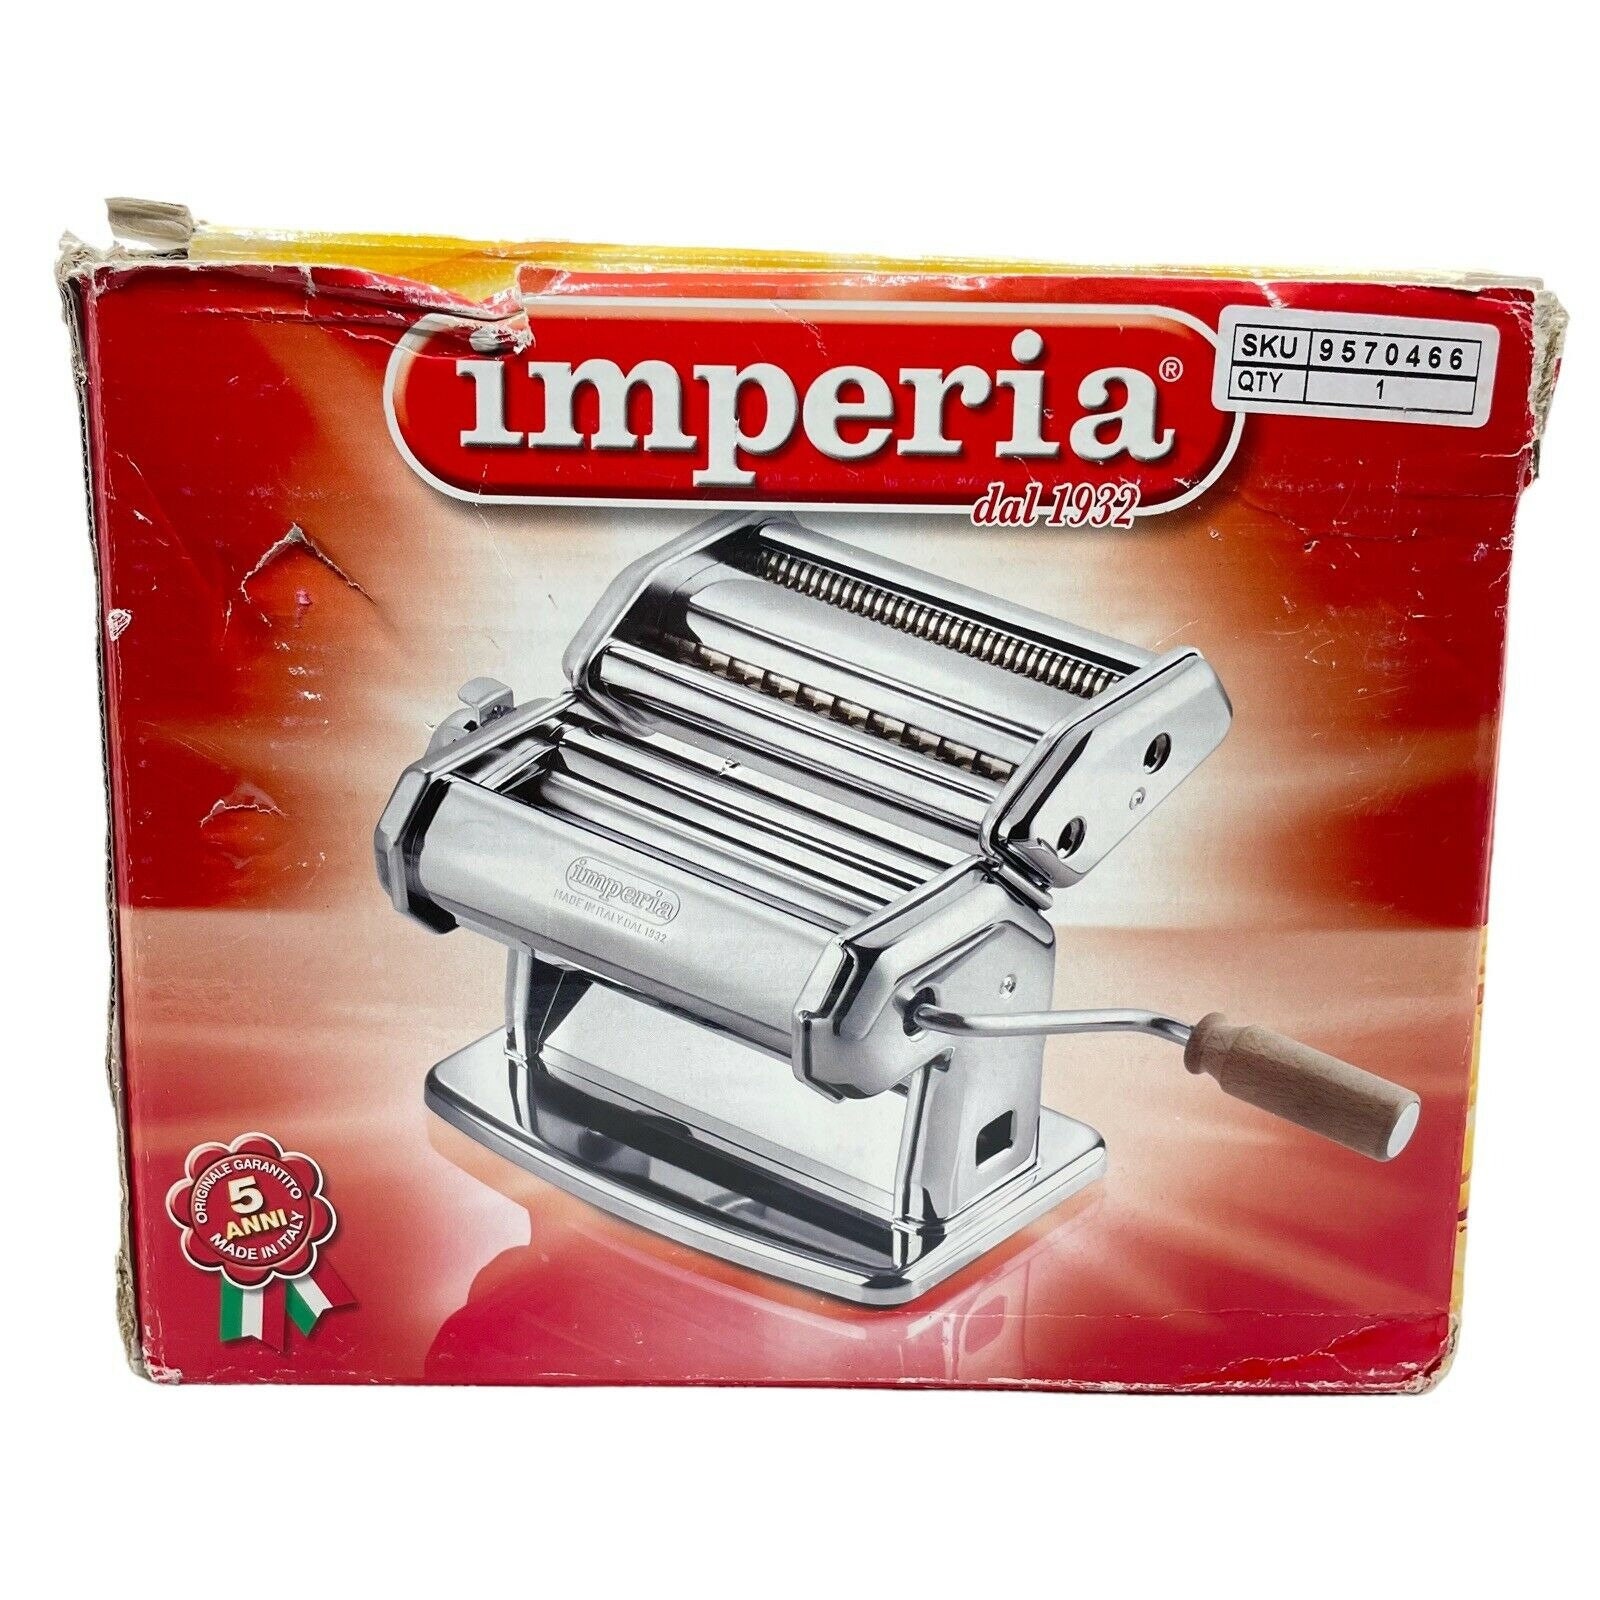 Imperia Manual Pasta Machine Imperia NIB 